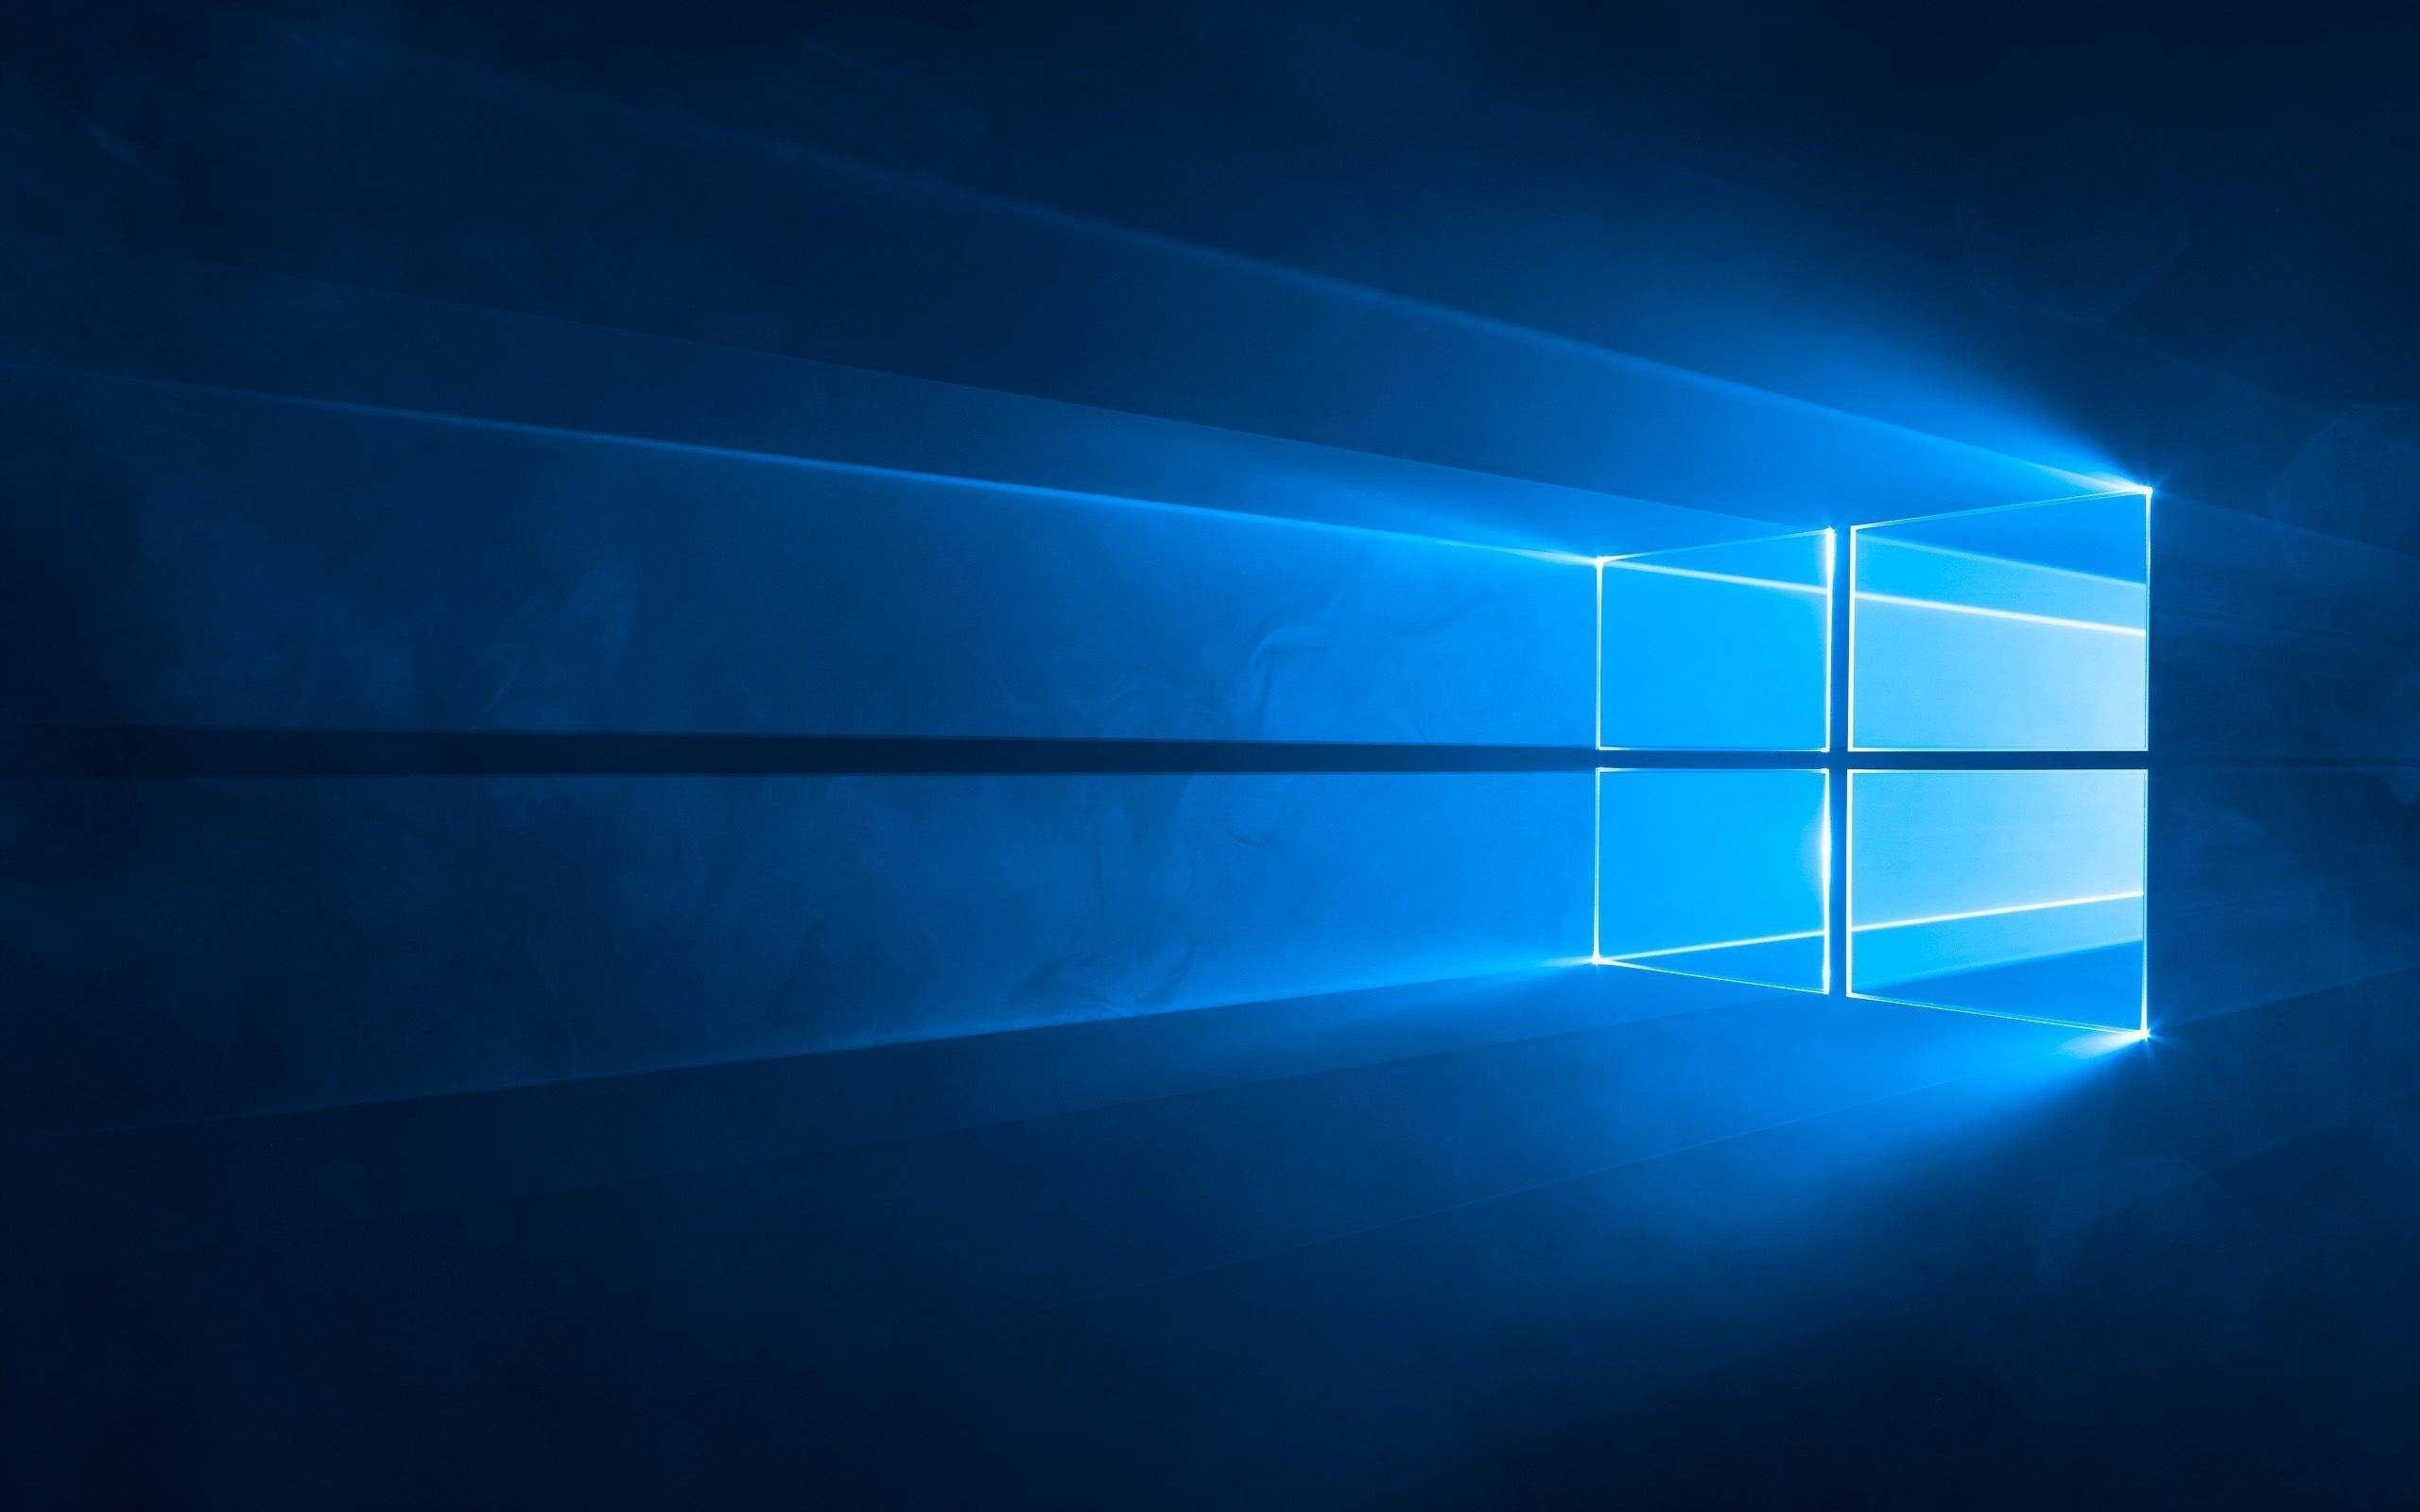  Windows Hintergrundbild 2560x1600. Windows 10: Standard Wallpaper Für Den Desktop (Hero Hintergrundbild)